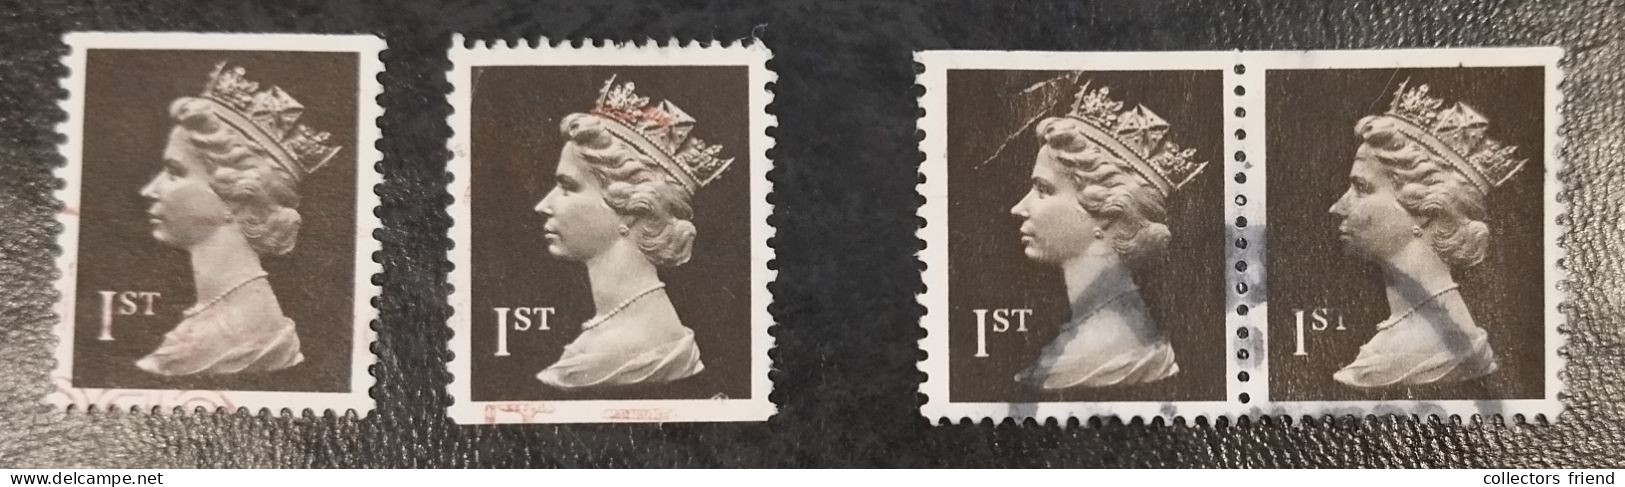 Grande Bretagne - Great Britain - Großbritannien - Elizabeth II - 1989 -  YT 1395 Imp. Bottom + Top + Top (pair) - Used - Machins